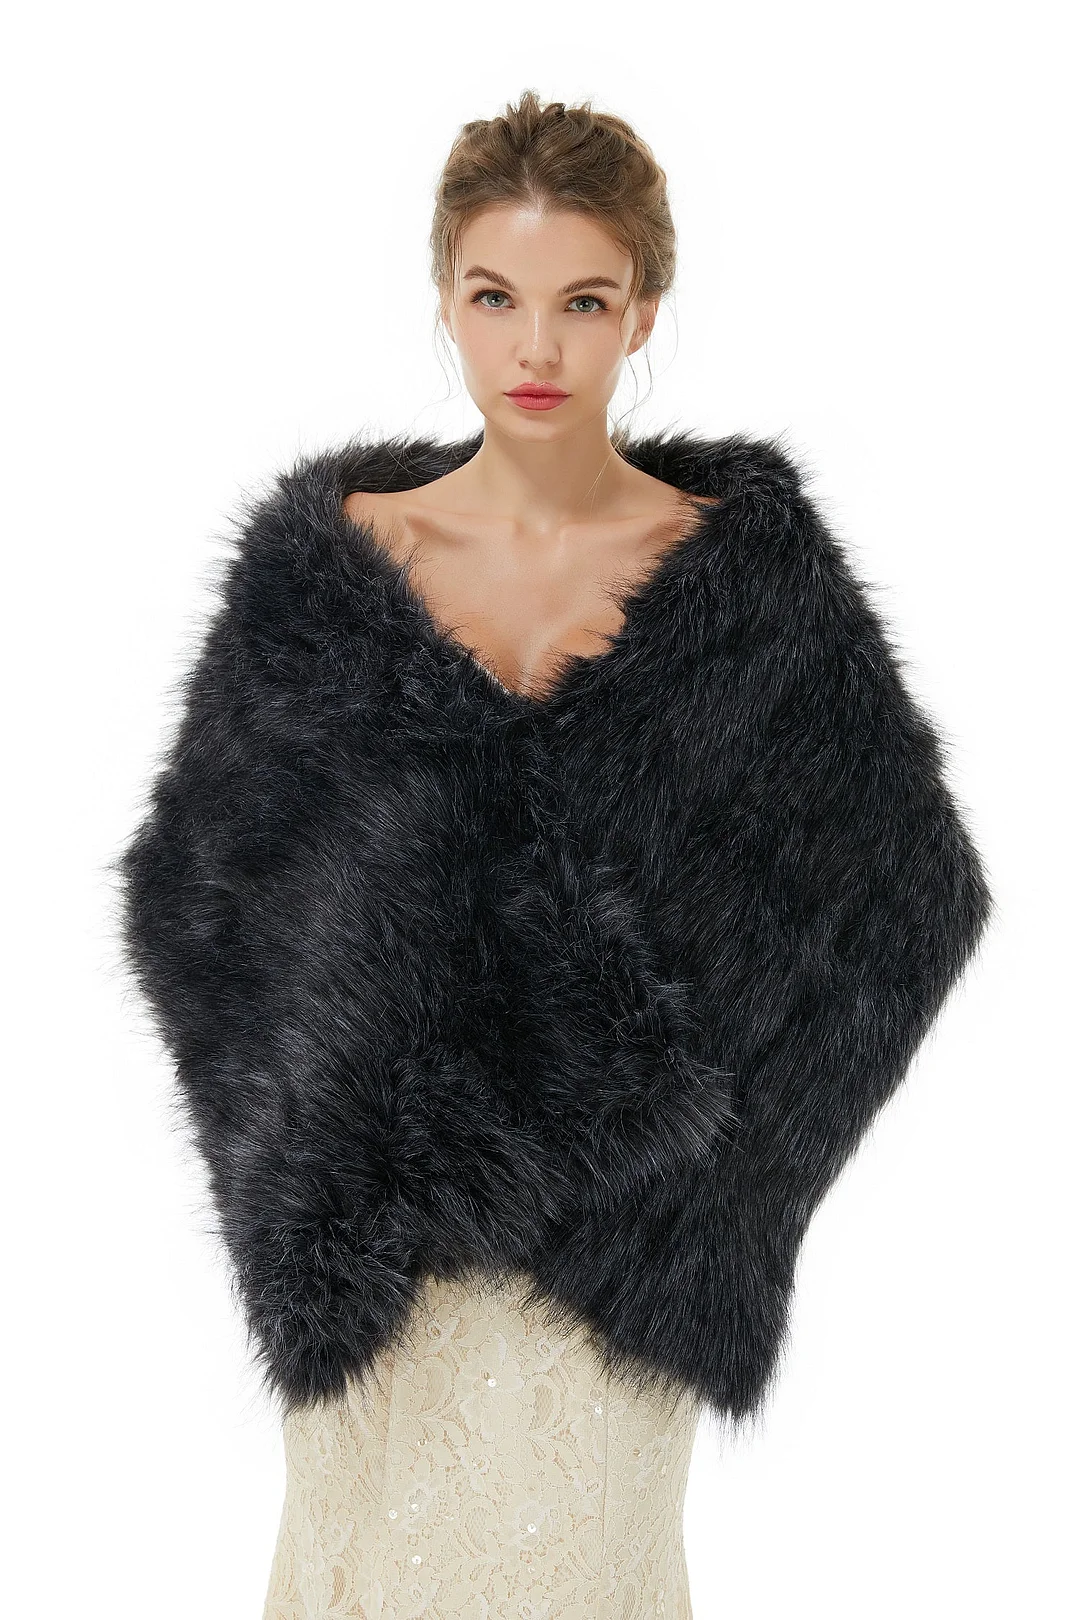 Luluslly Black Winter Faux Fur Wedding Wrap Shawl for Brides